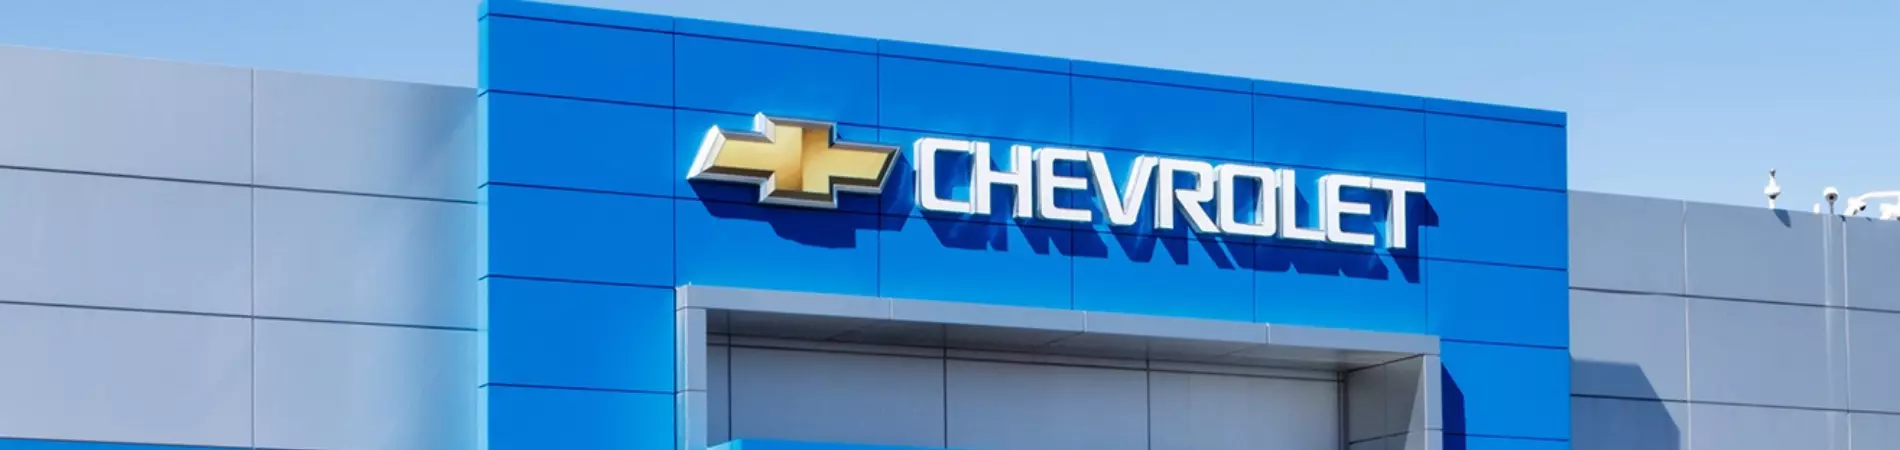 Venda e ofertas de carros novos e seminovos na concessionária Chevrolet Automec Amparo. Peças genuínas GM, acessórios automotivos originais e serviços de manutenção e revisão de veículos.